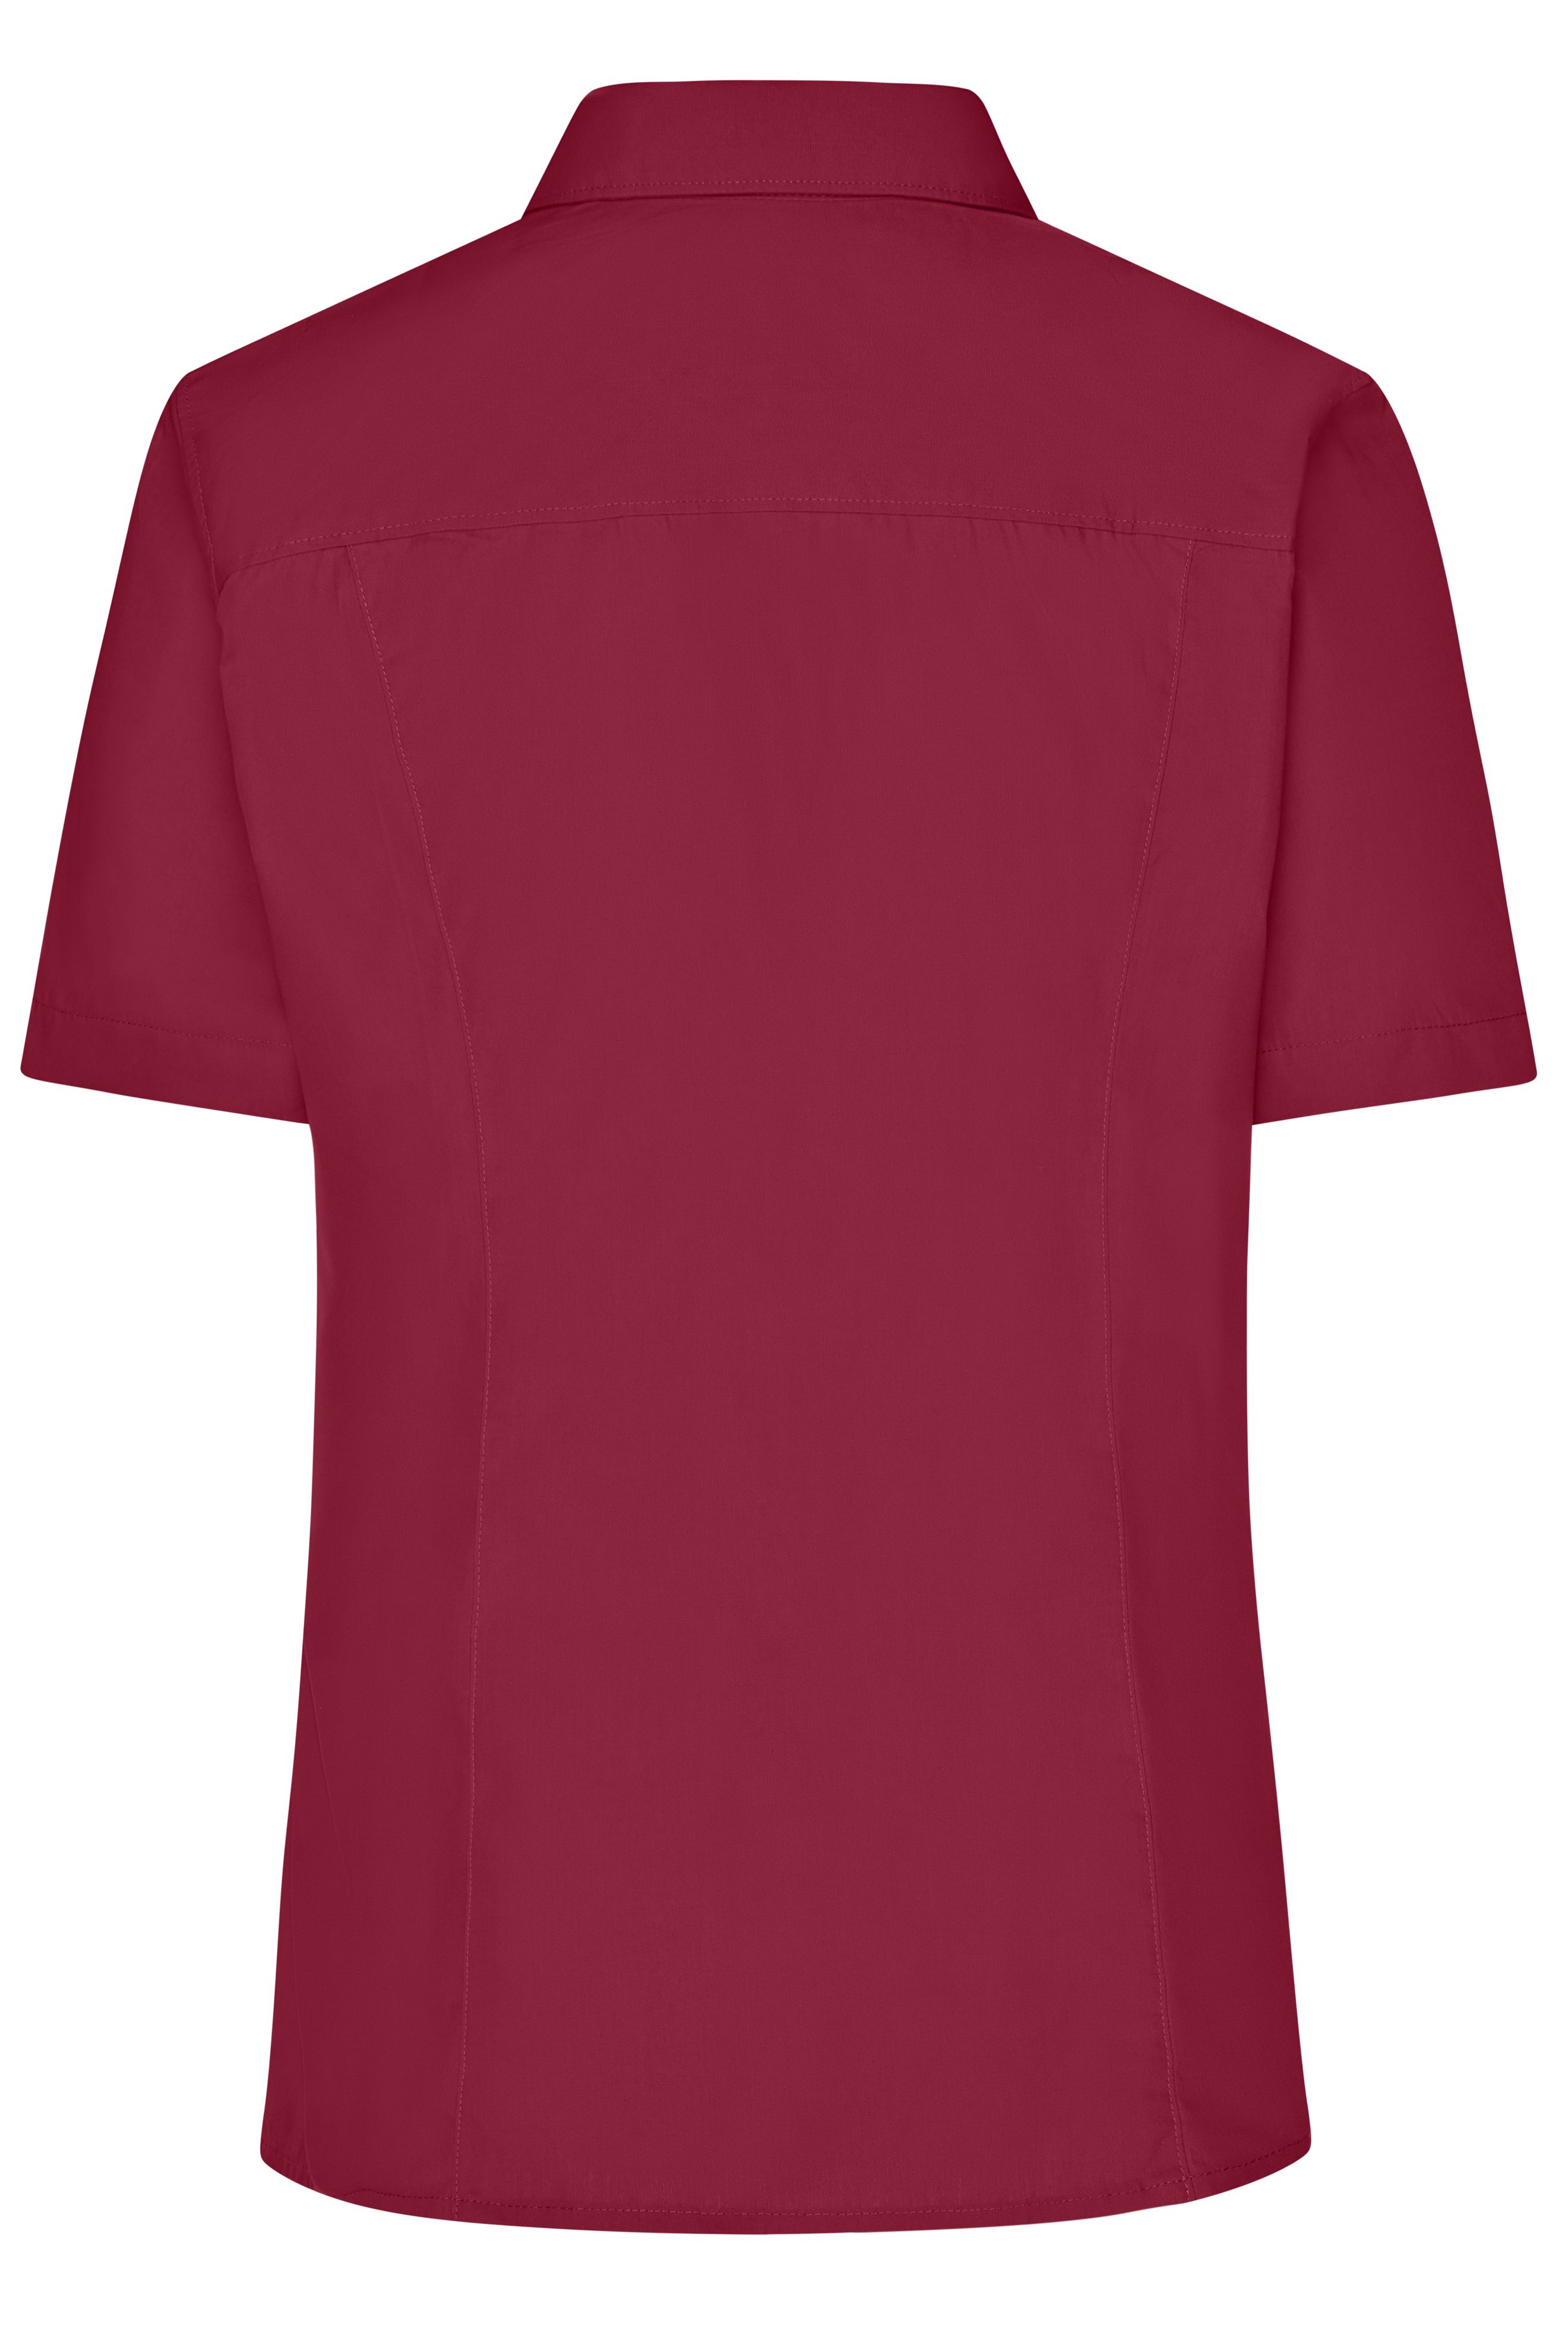 Ladies' Business Shirt Short-Sleeved JN643 Klassisches Shirt aus strapazierfähigem Mischgewebe